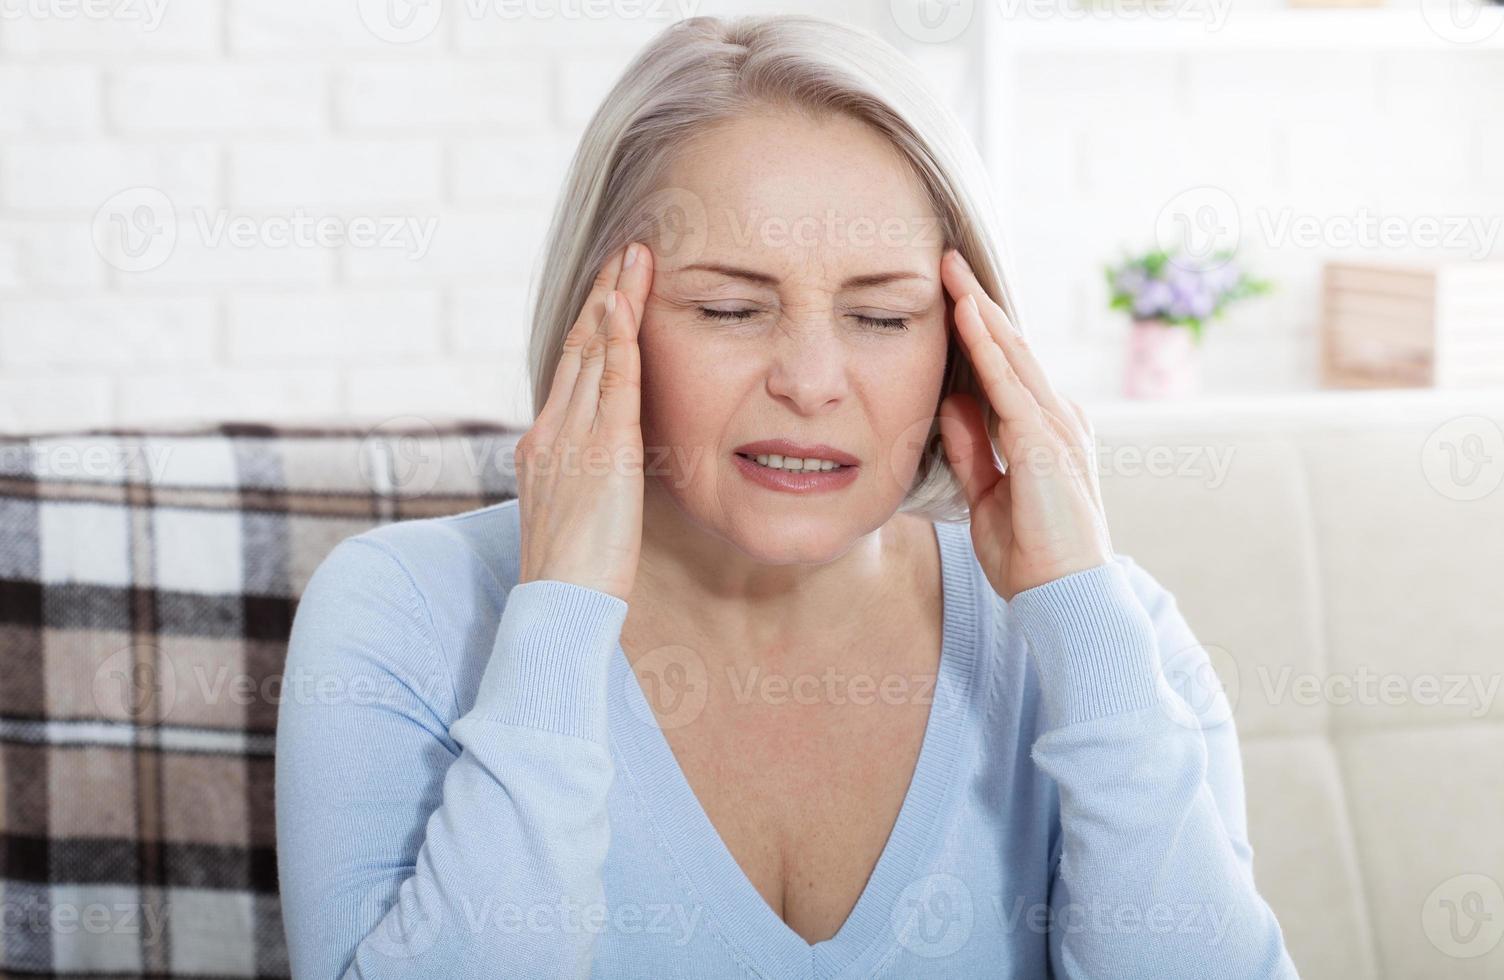 mulher que sofre de estresse ou dor de cabeça fazendo careta de dor enquanto segura a nuca com a outra mão na têmpora, com copyspace. foto do conceito com indicação de localização da dor.